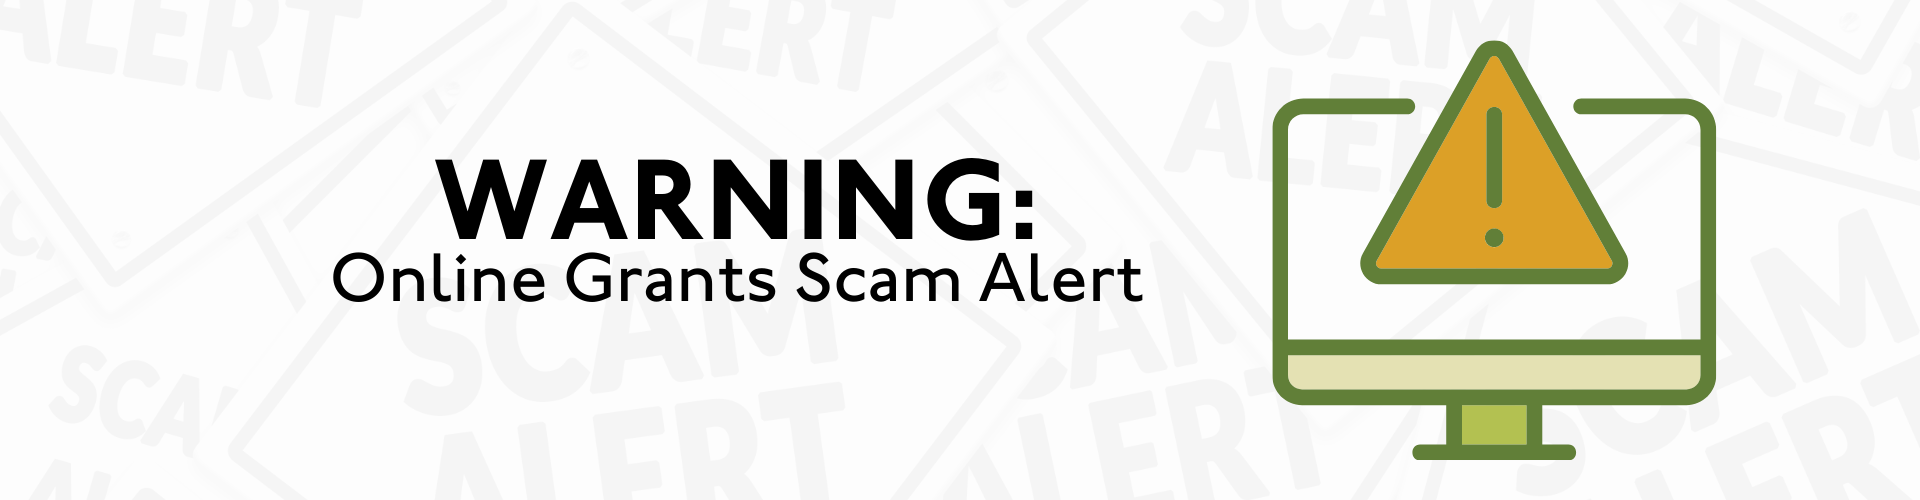 Warning: Online Grants Scam Alert